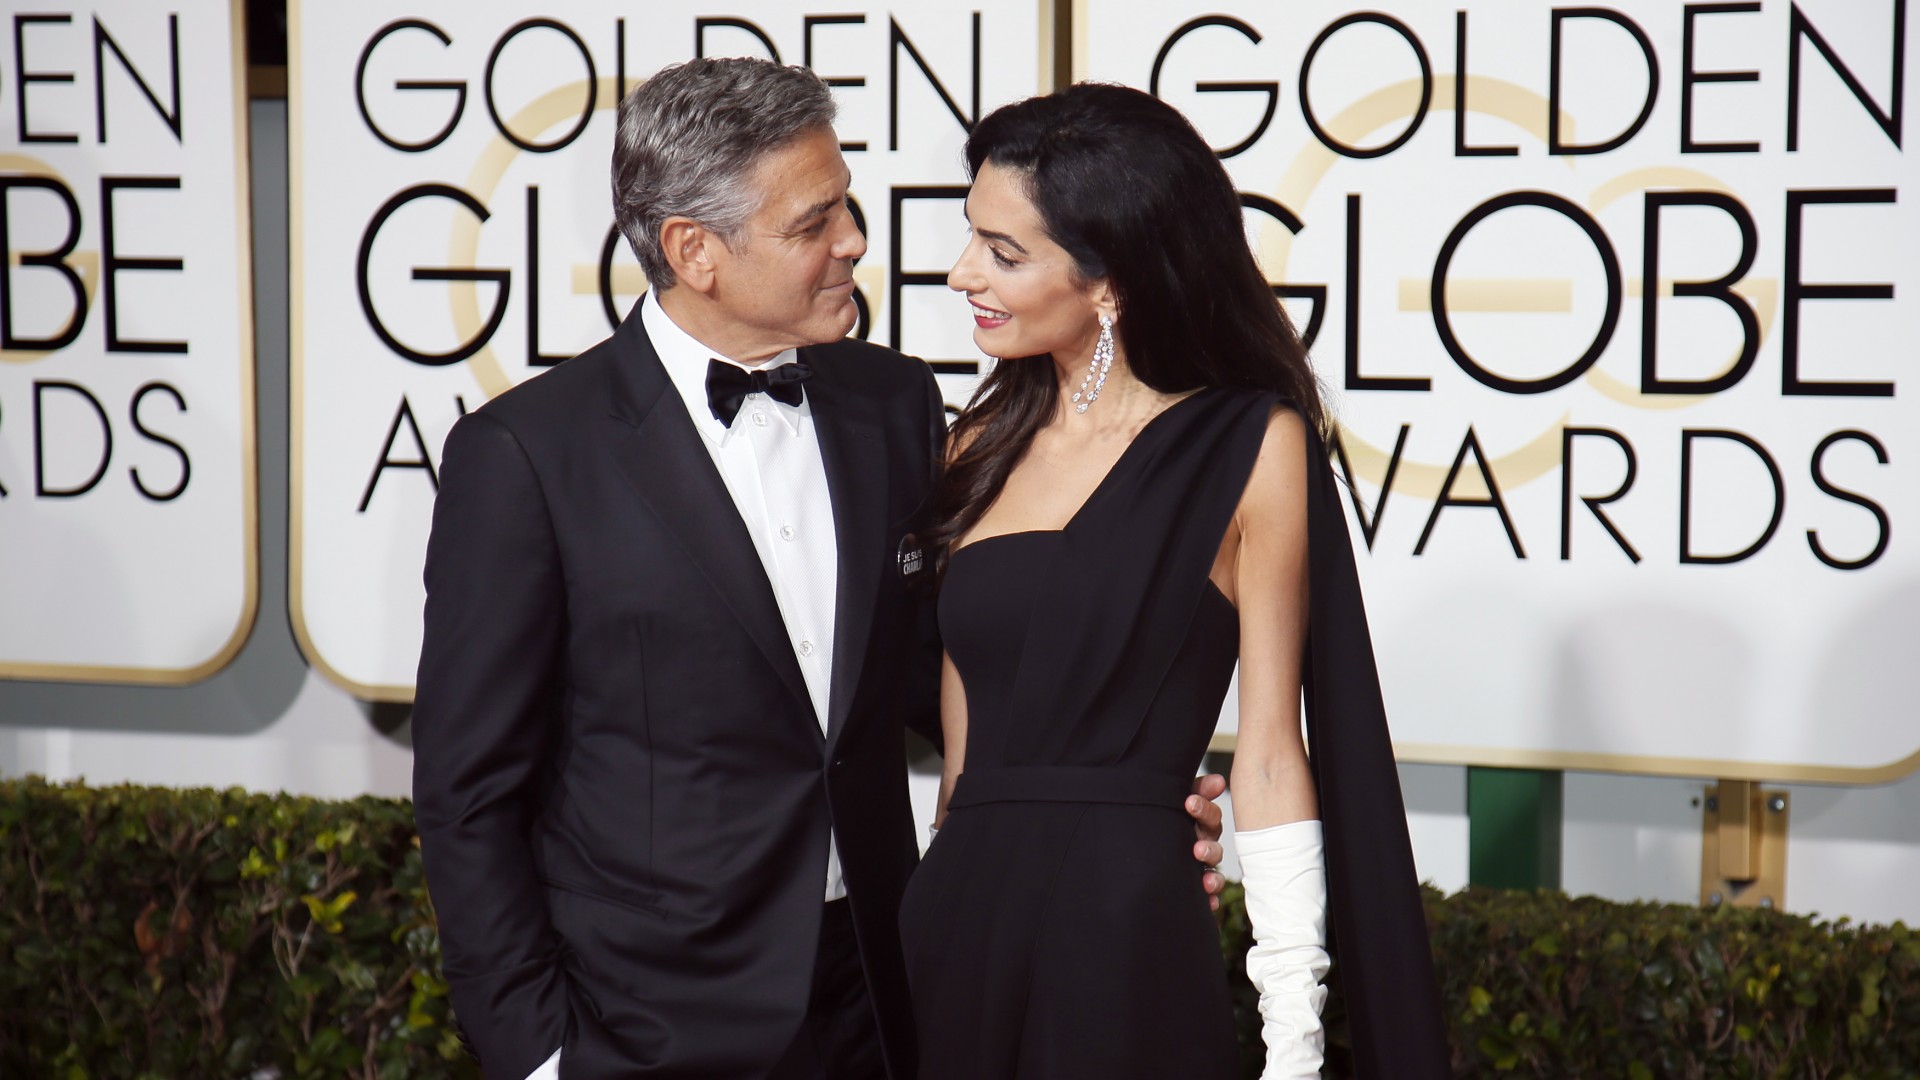 Джордж Клуни, Амал Аламудин, Самые популярные знаменитости, актер, писатель, продюсер, George Clooney, Amal Alamuddin, Most Popular Celebs in 2015, actor, writer, producer (horizontal)